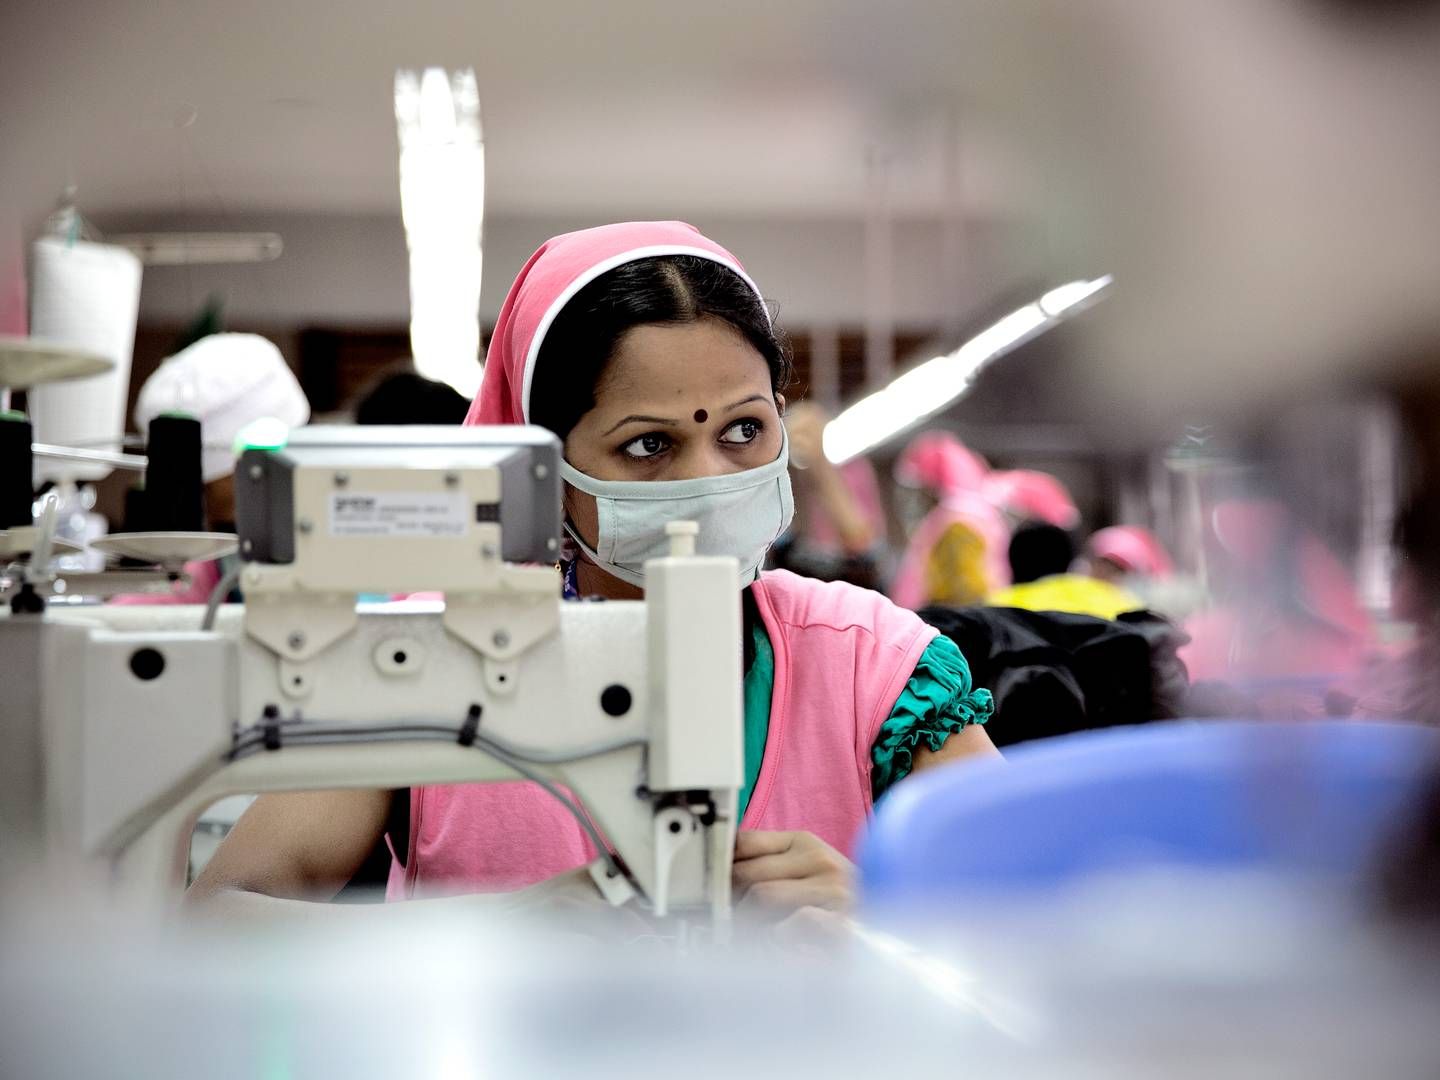 Coronapandemien og aflyste ordrer fra store detailvirksomheder satte arbejderne i Bangladesh' tøjindustri under stort pres, viser ny rapport. Arkivfoto. | Foto: Joachim Adrian